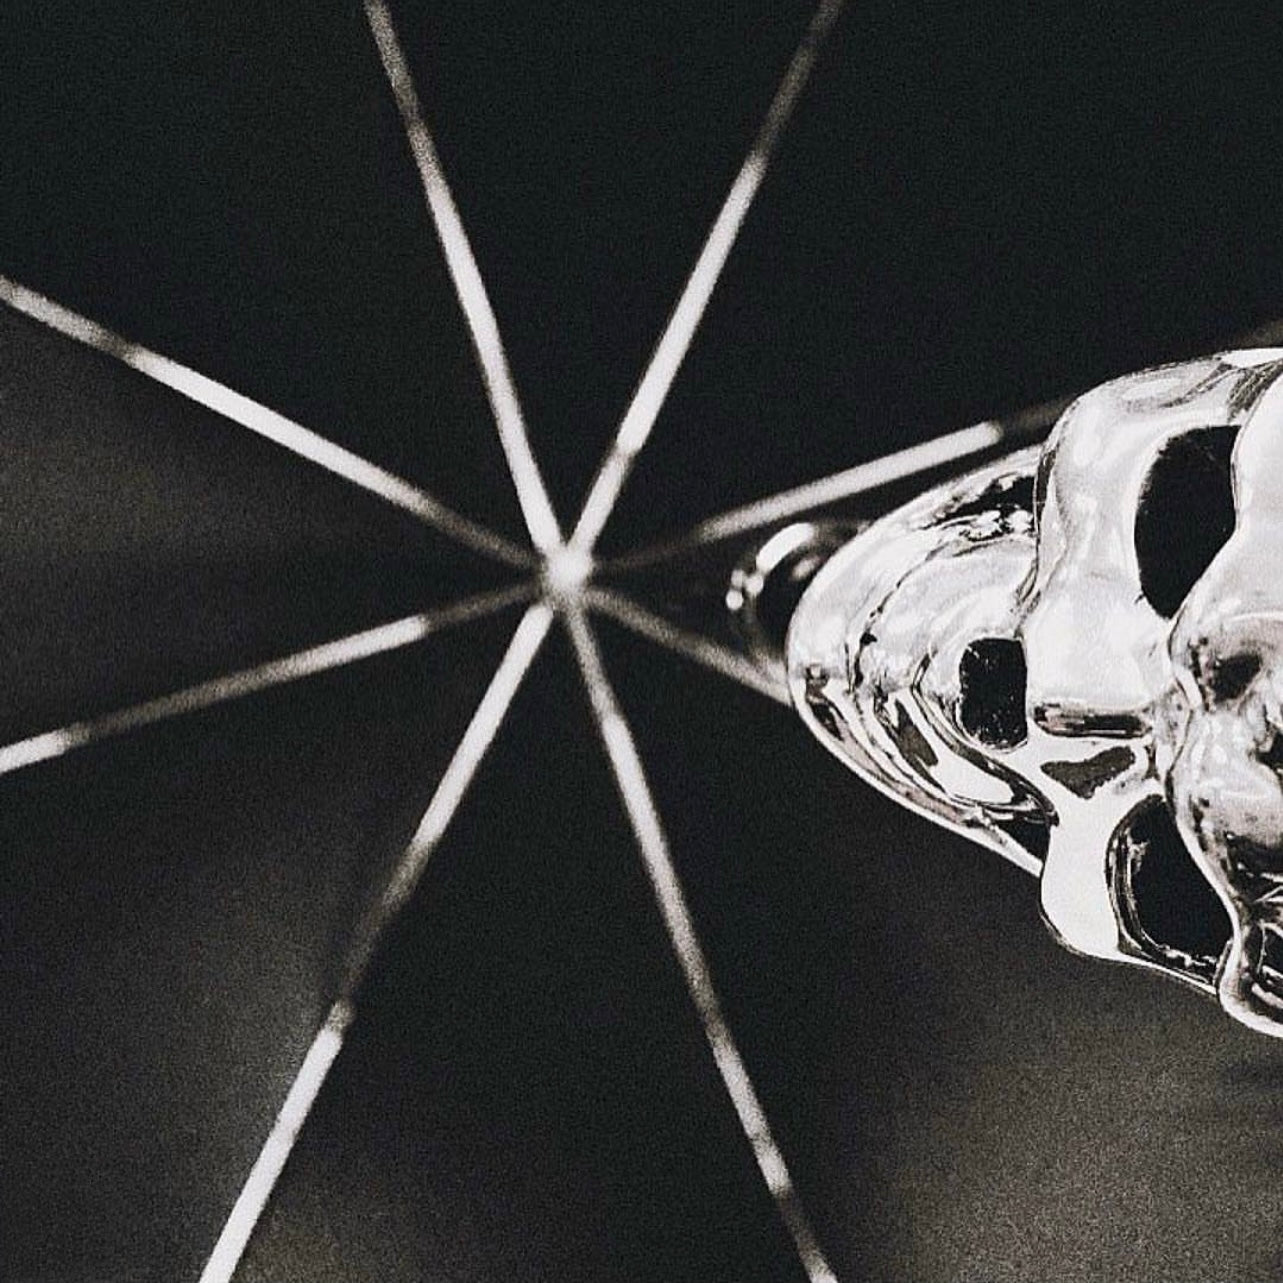 Silver Skull folding umbrella